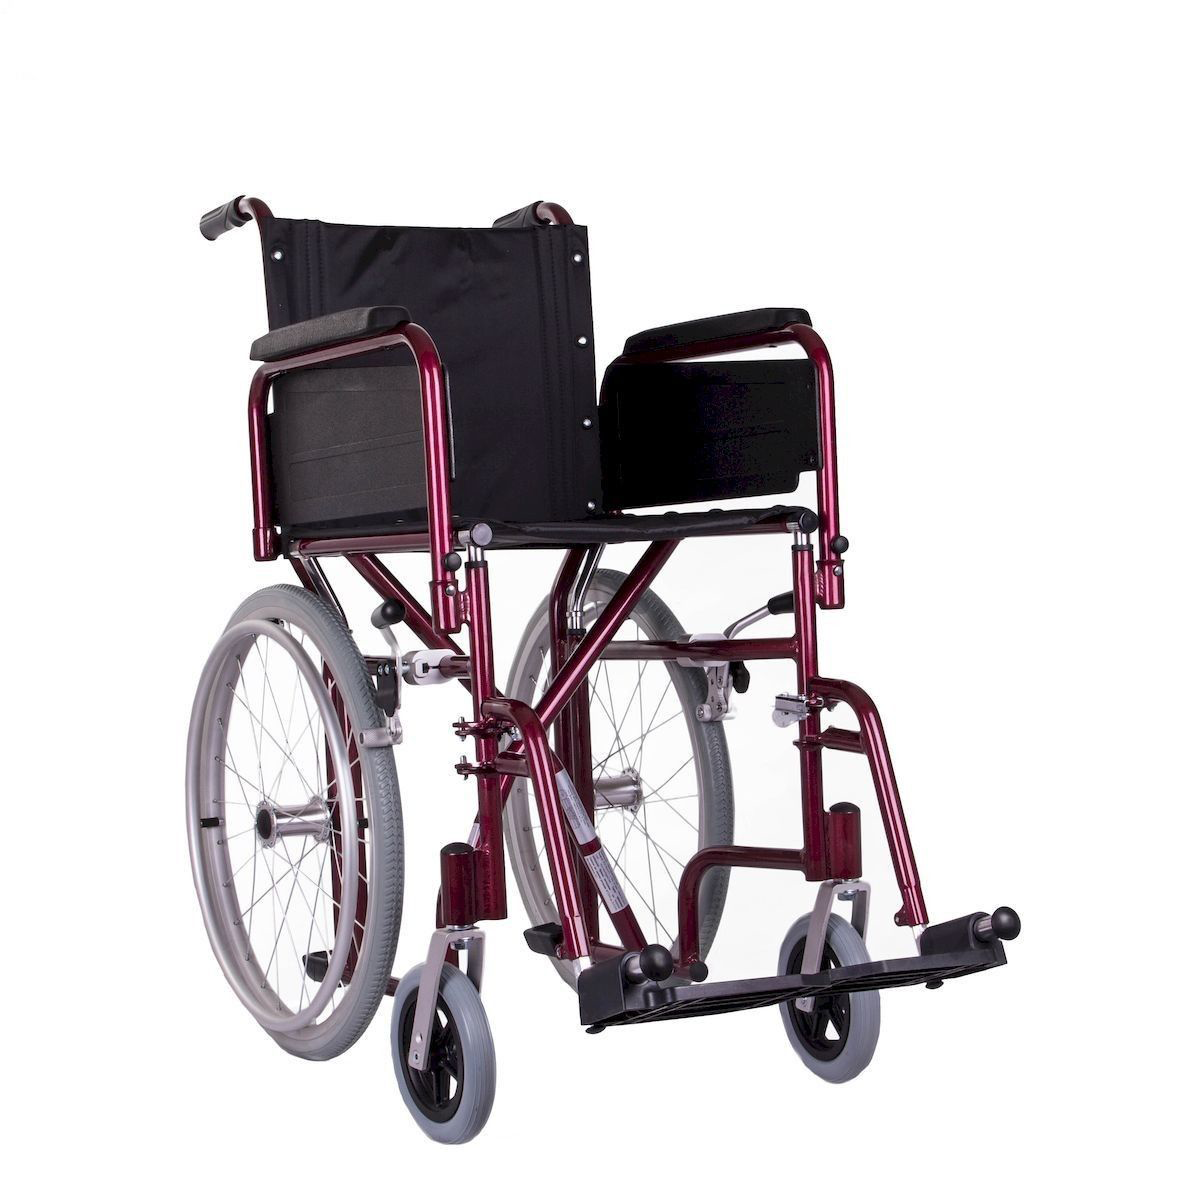 Инвалиная коляска для узких проемов «SLIM»